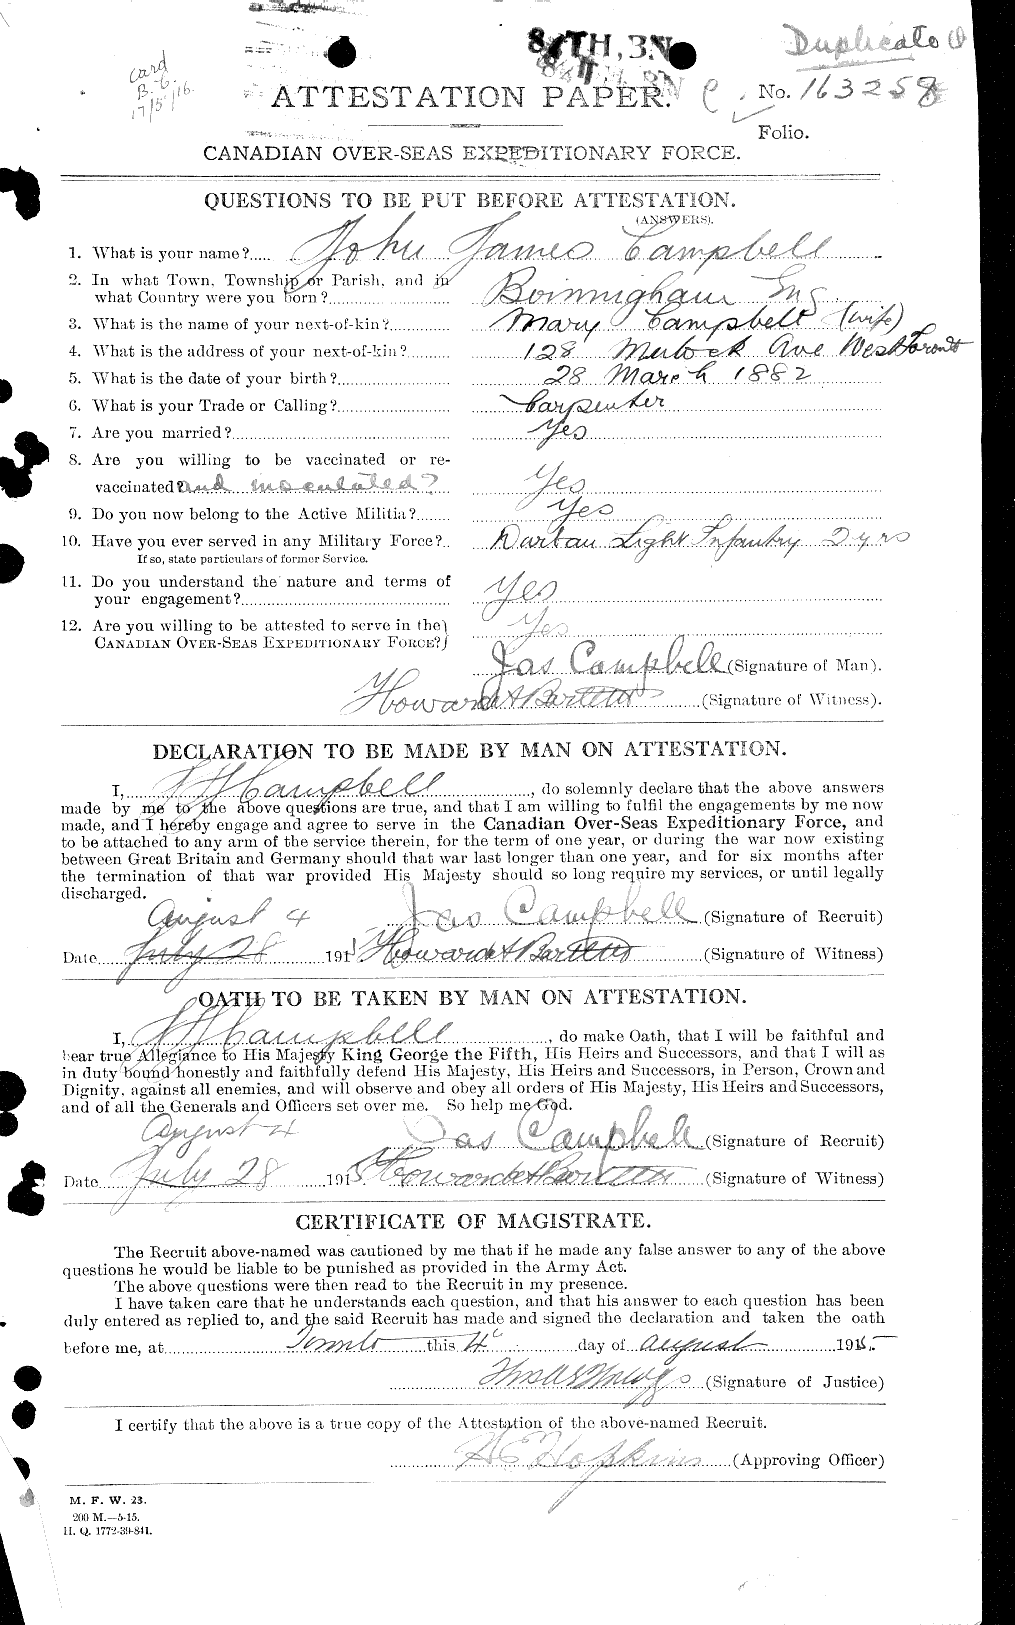 Dossiers du Personnel de la Première Guerre mondiale - CEC 008542a